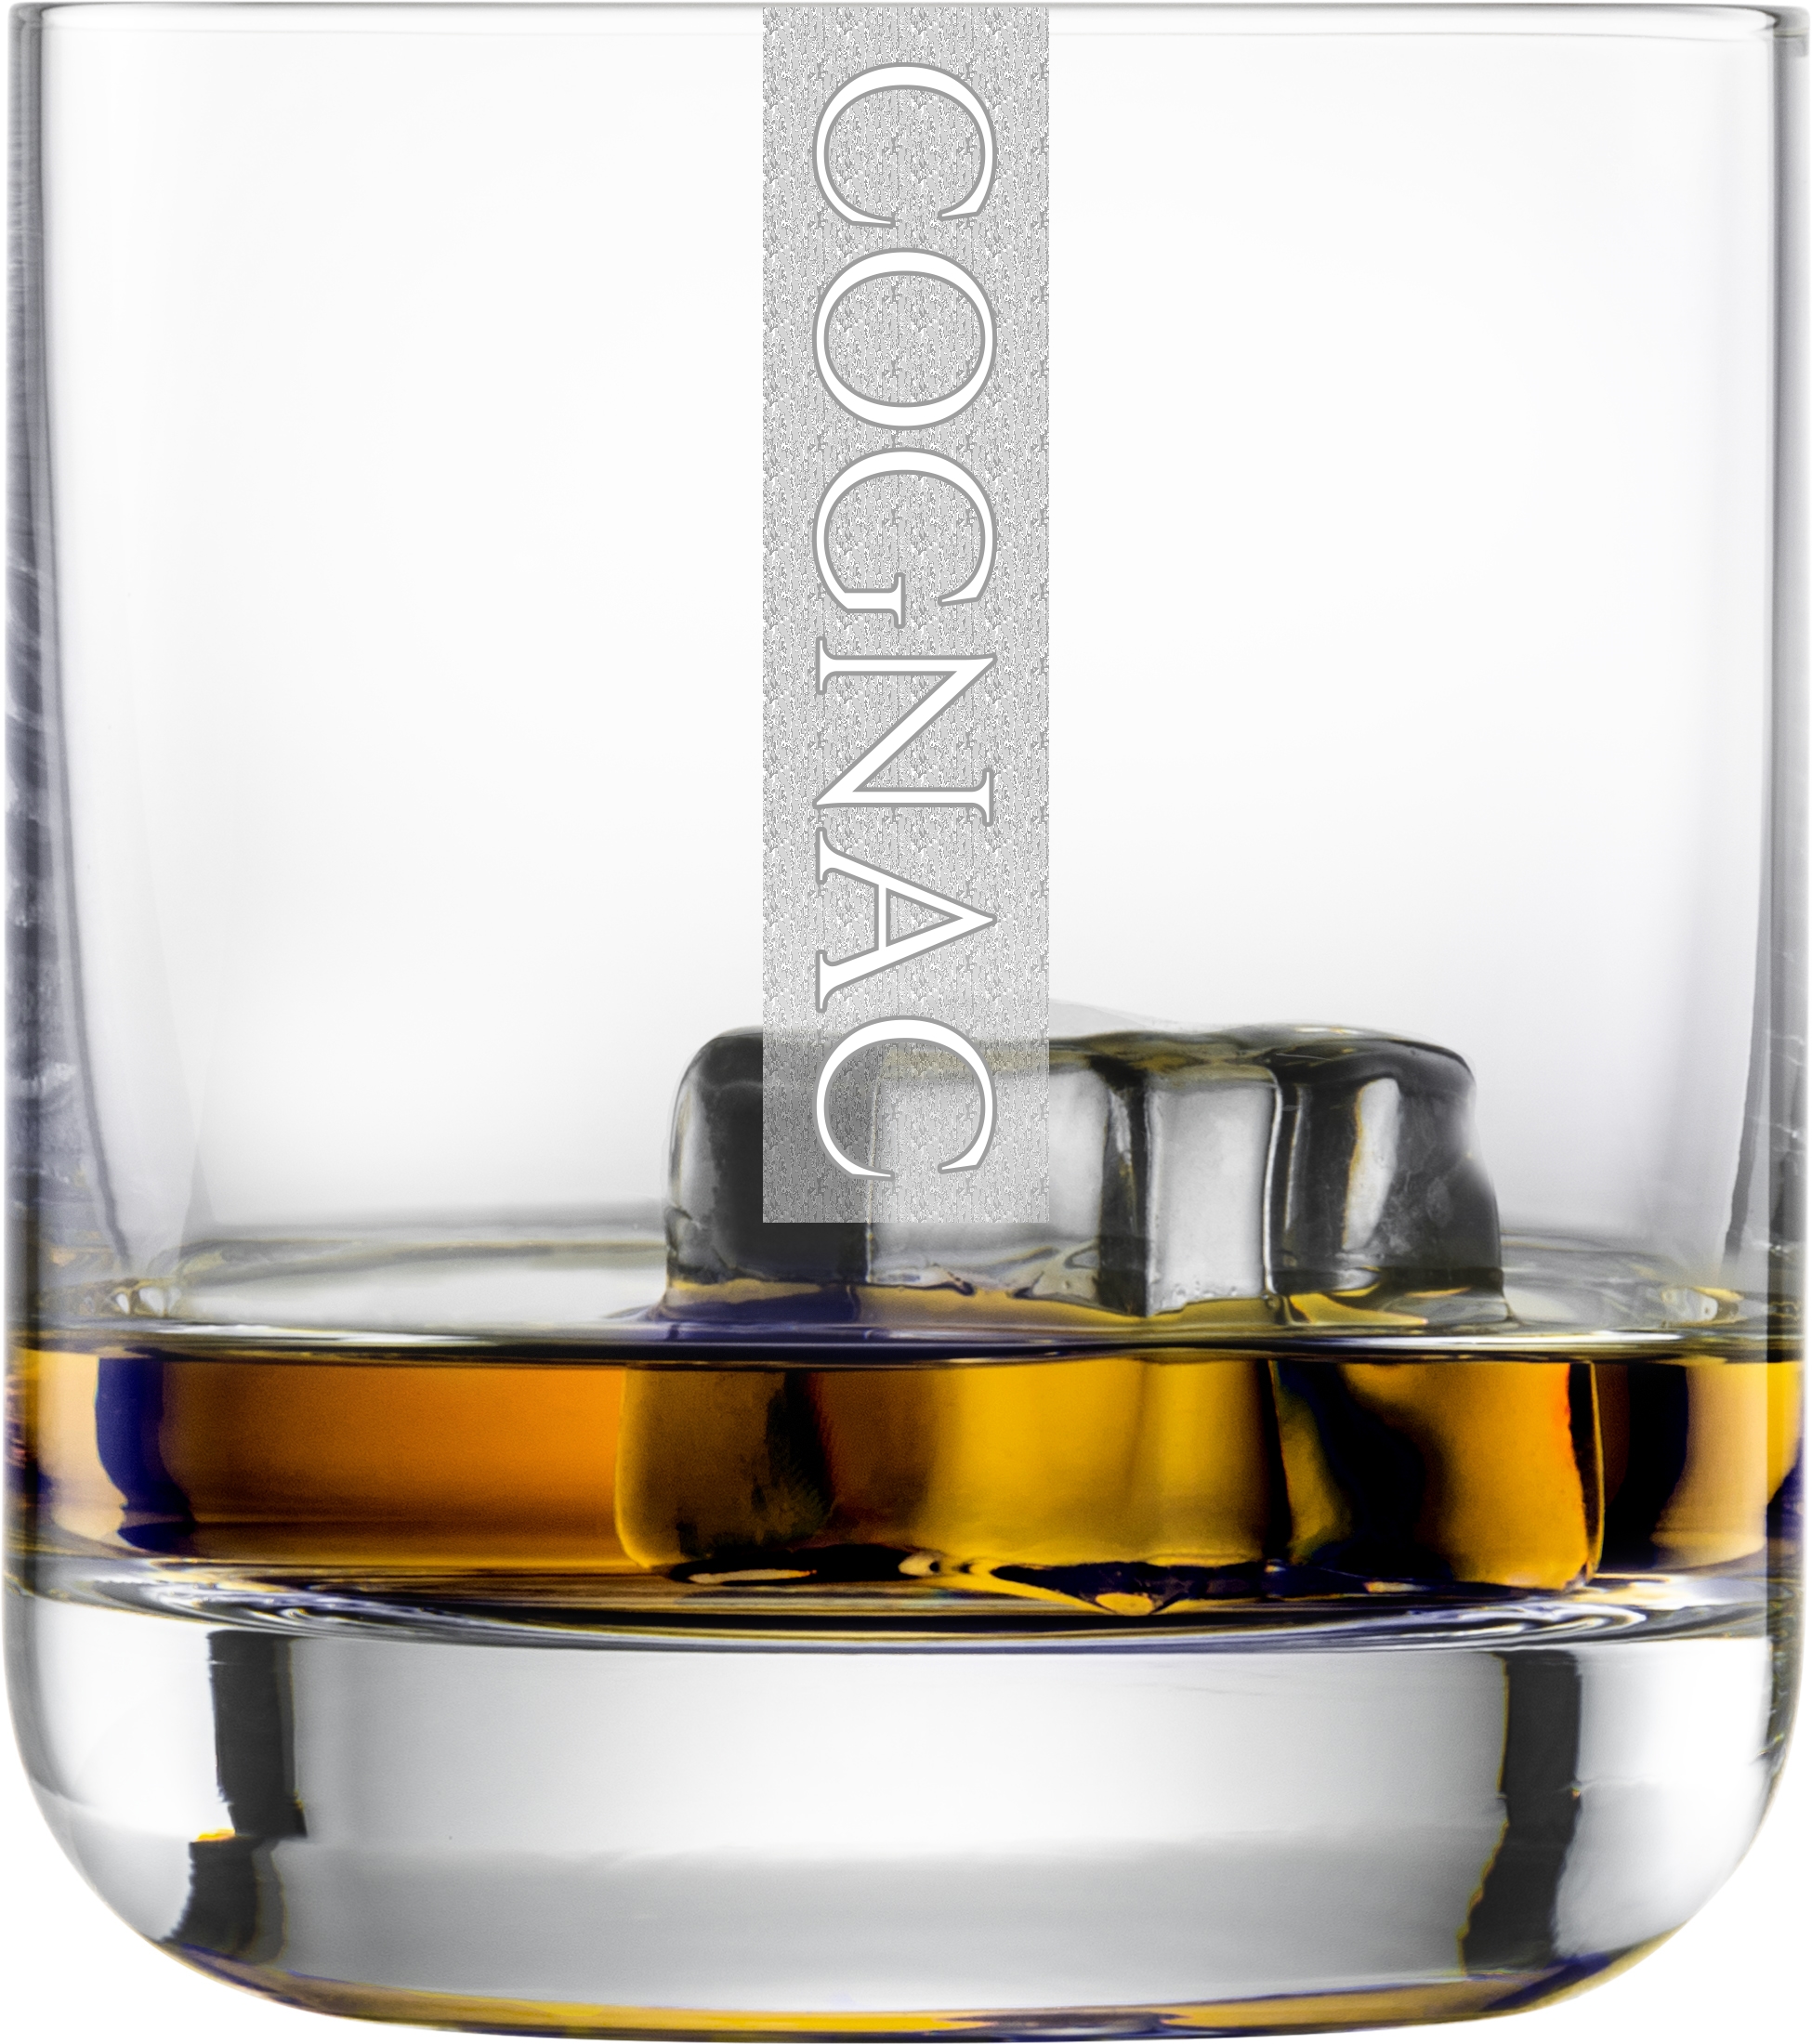 Cognac Gläser